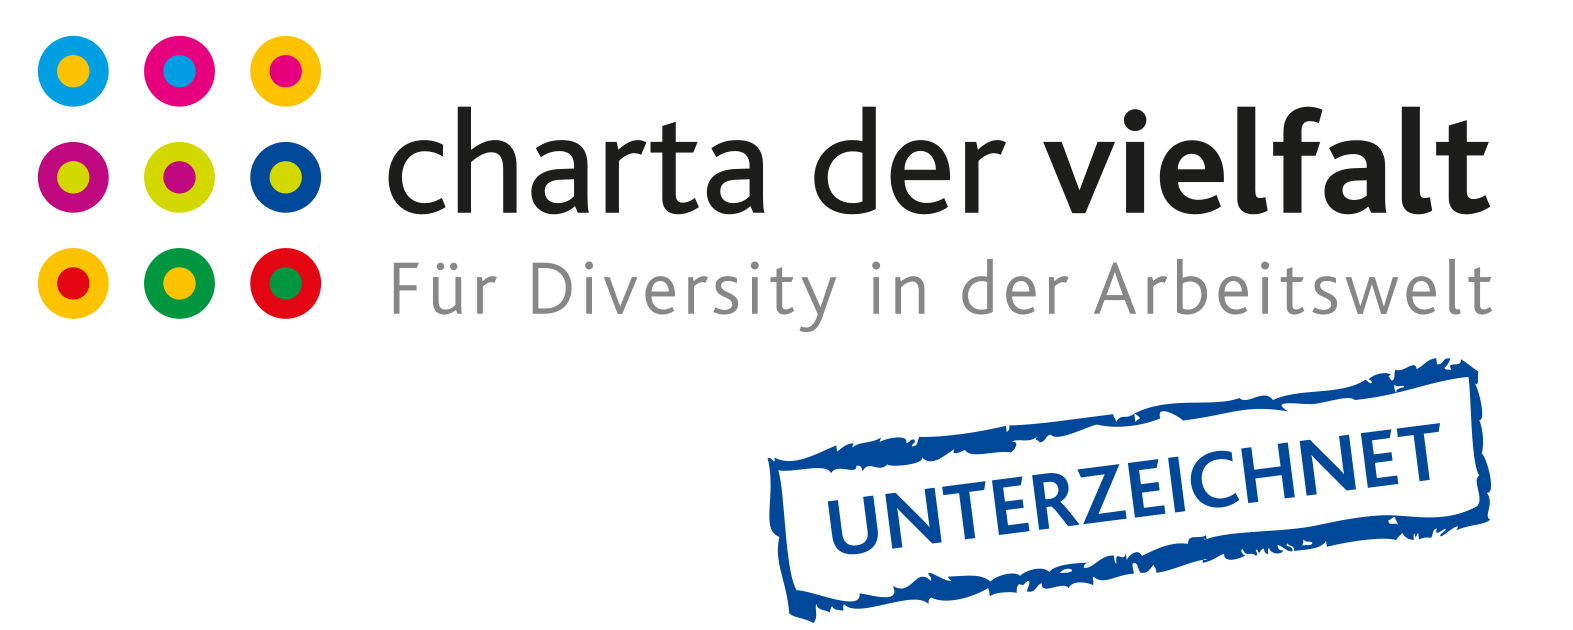 Logo "Charta der Vielfalt - Unterzeichnet"